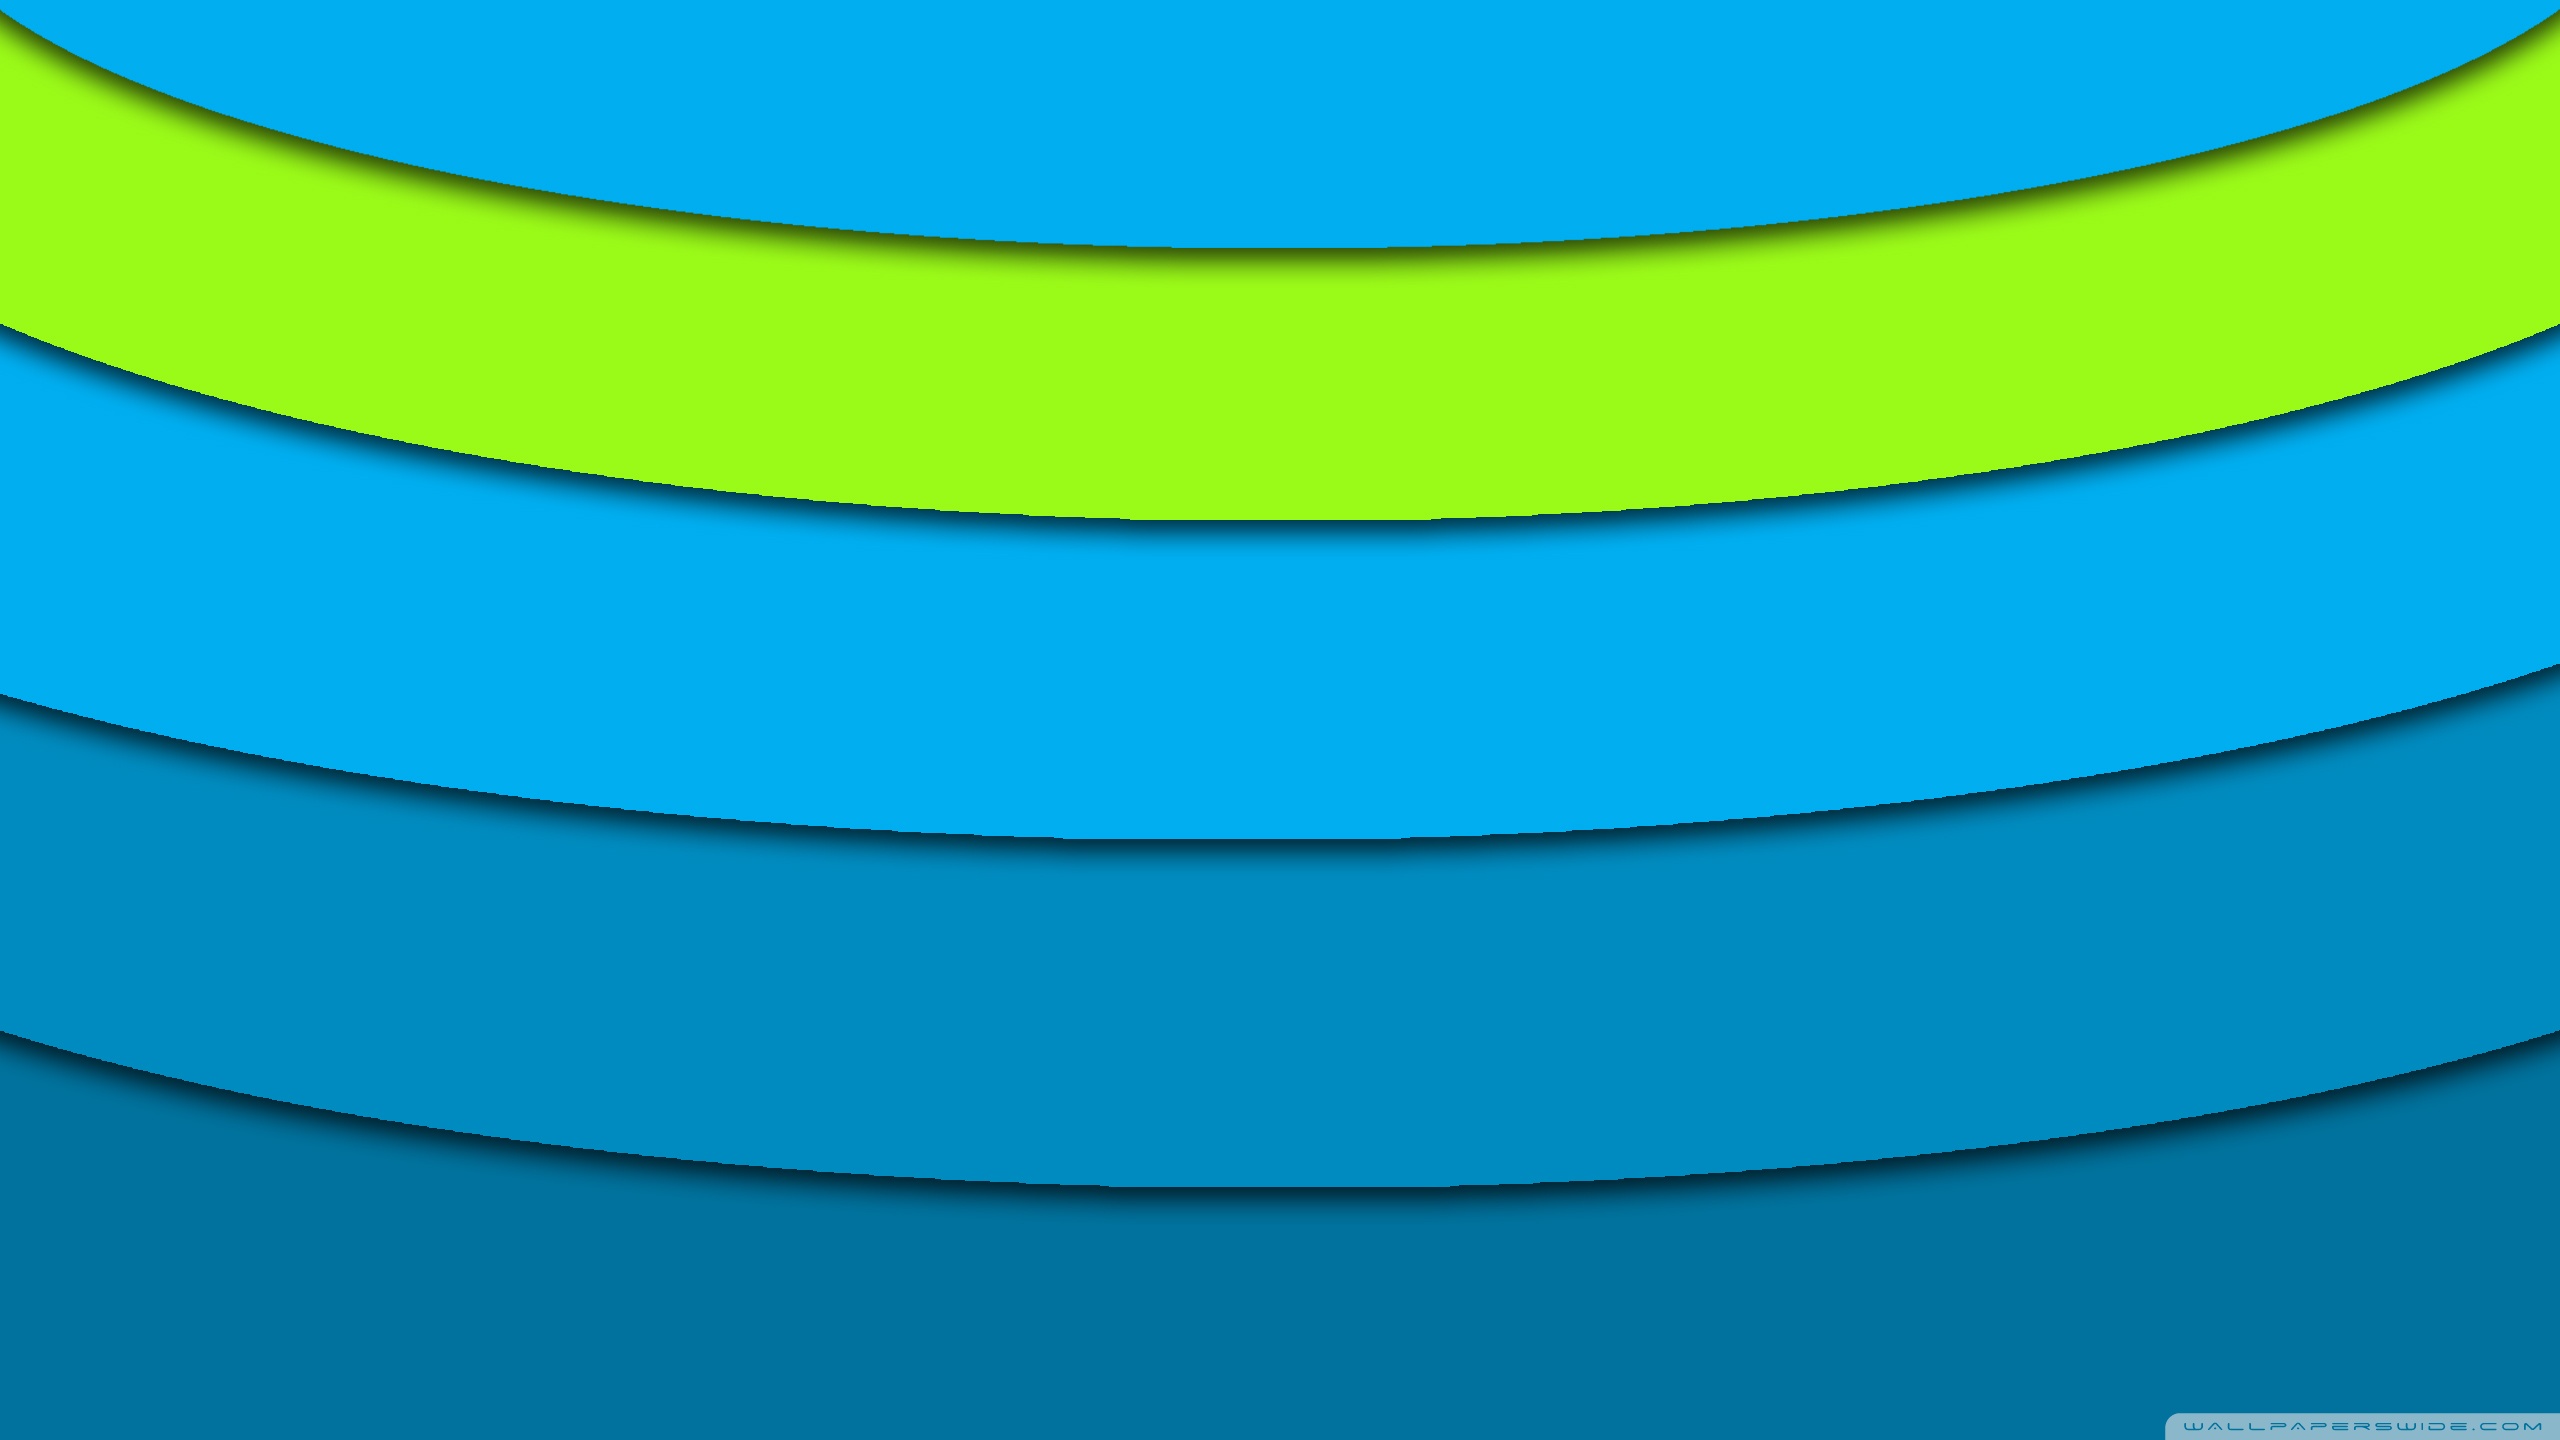 fond d'écran du nom de ranjan,bleu,vert,jaune,turquoise,aqua